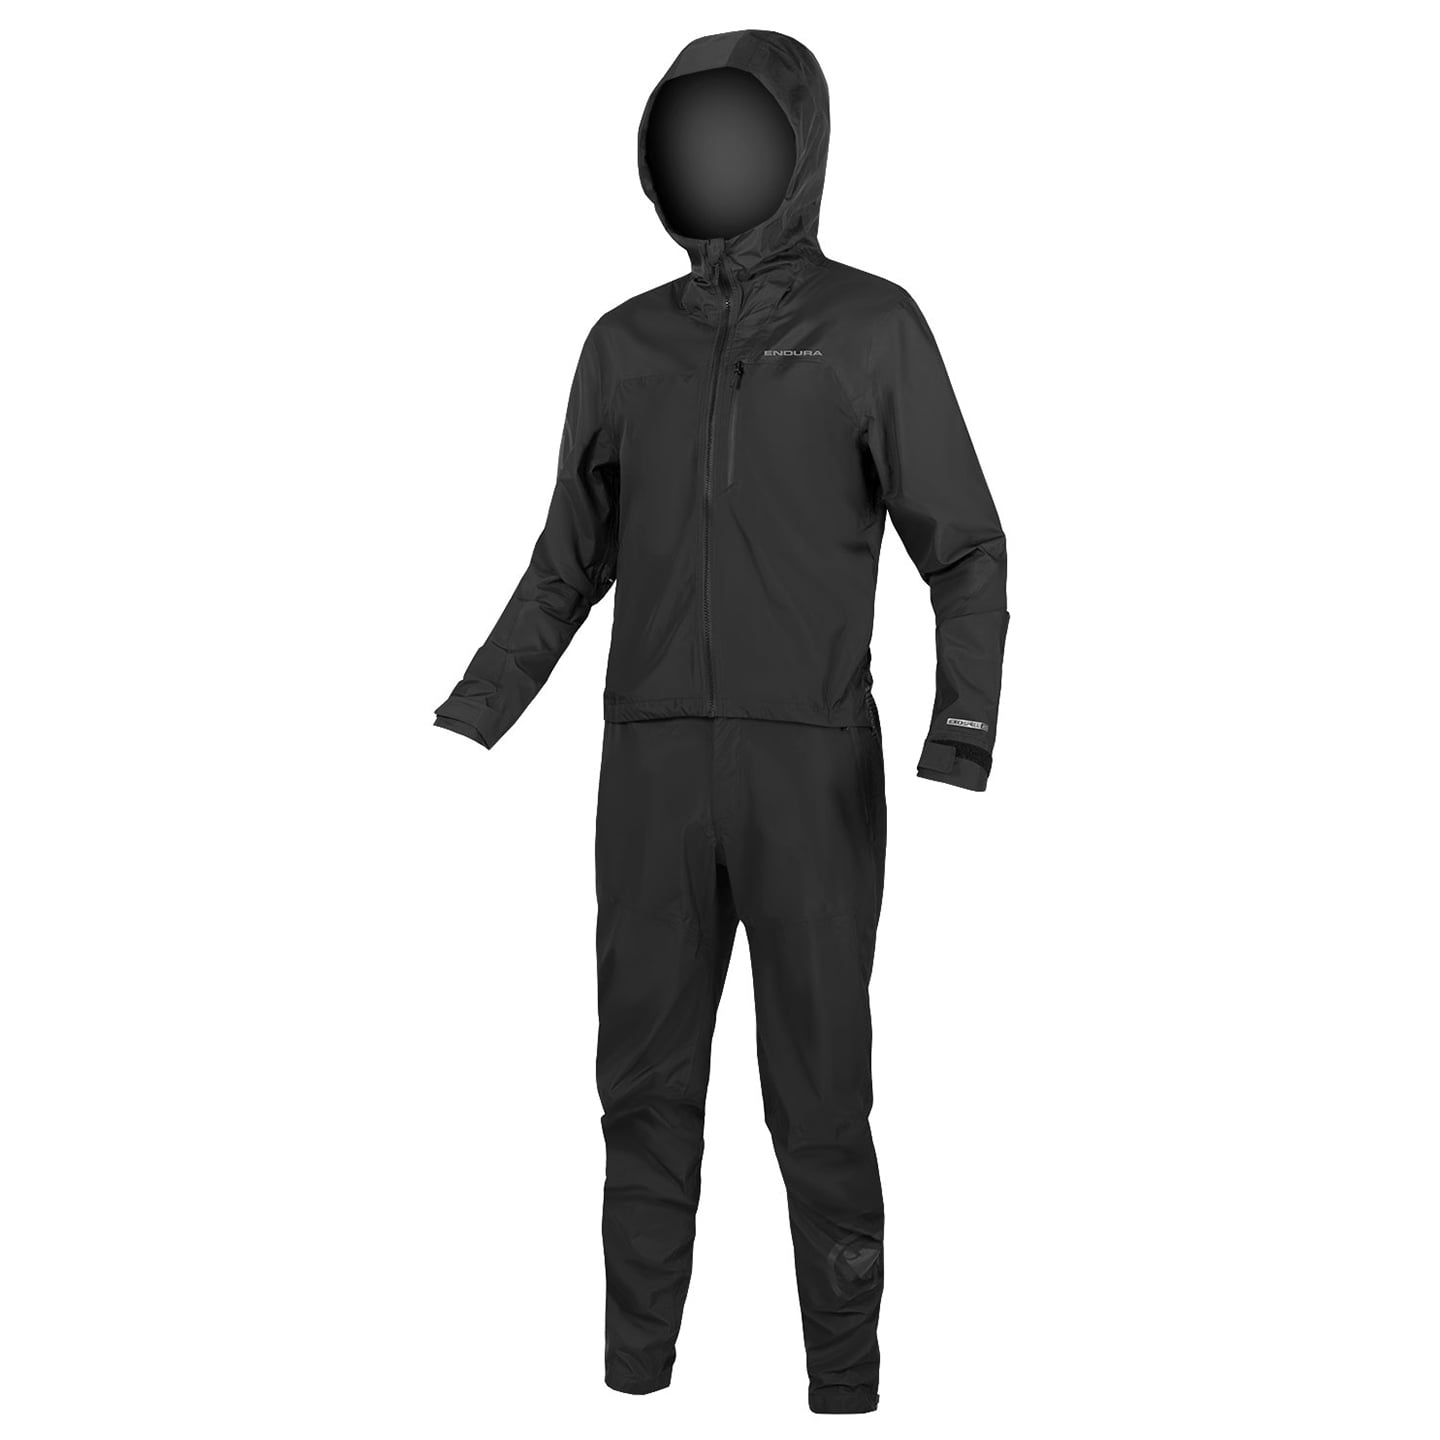 ENDURA Singletrack Onesie Waterproof Onsie Suit, for men, size L, Cycling body, Cycle gear